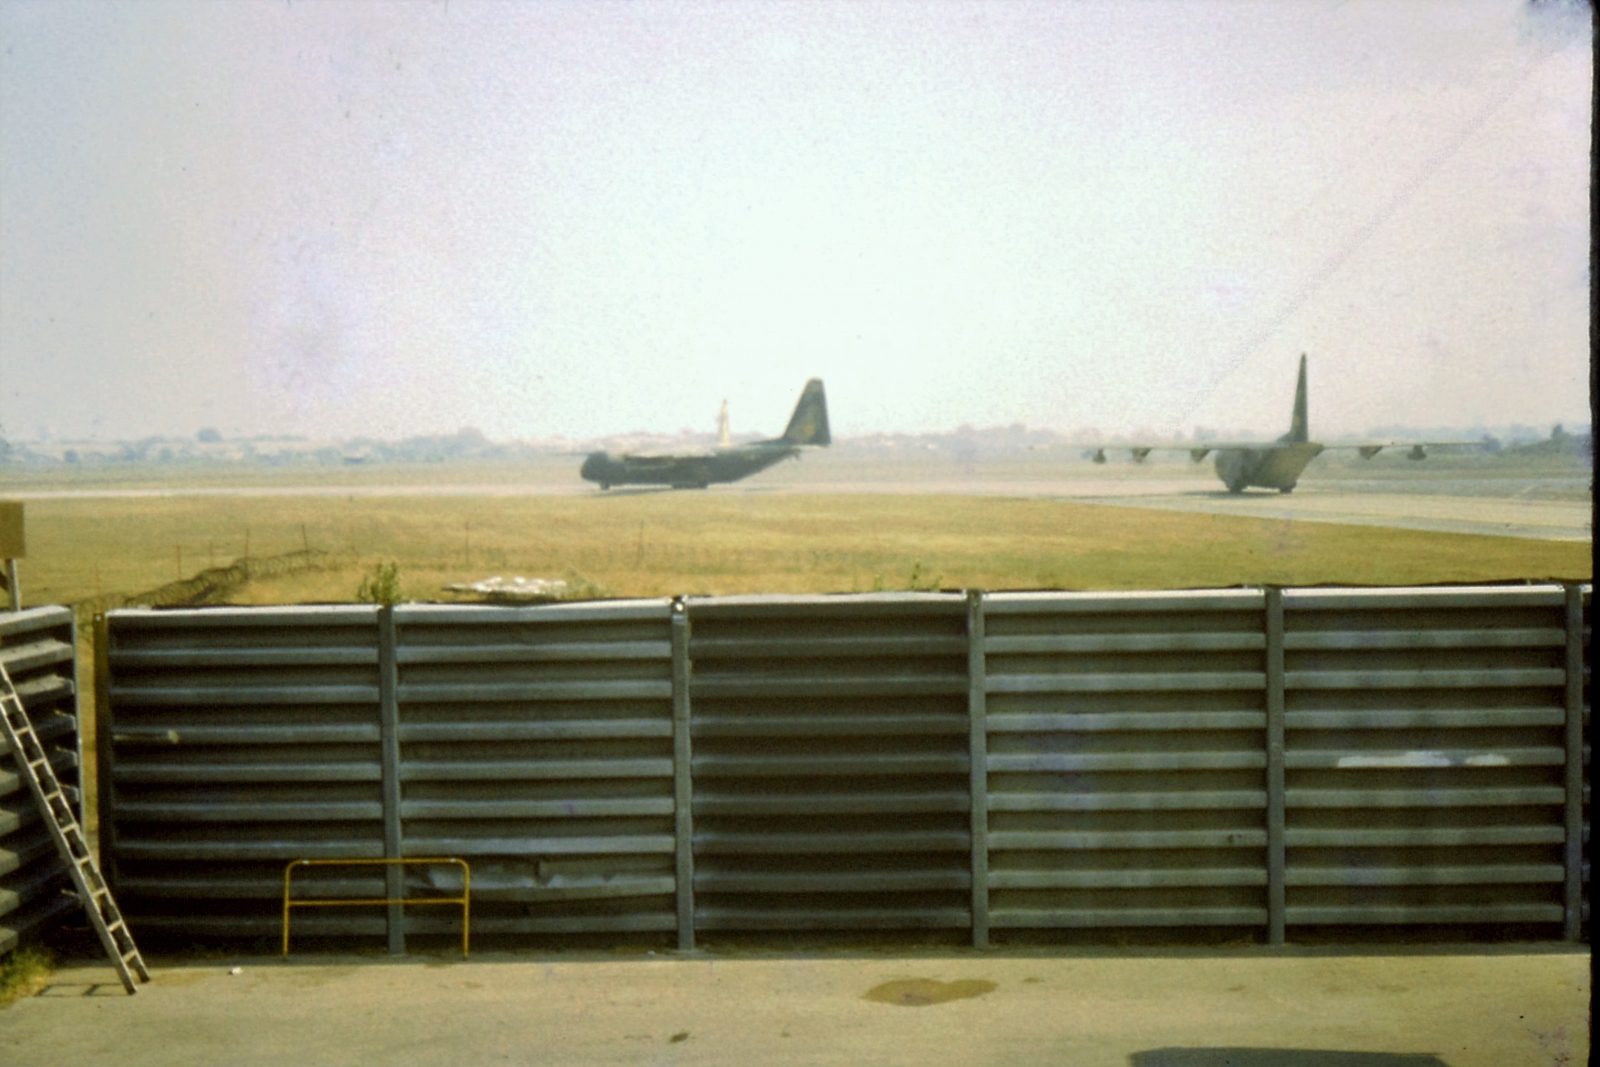 SVN C-130A's